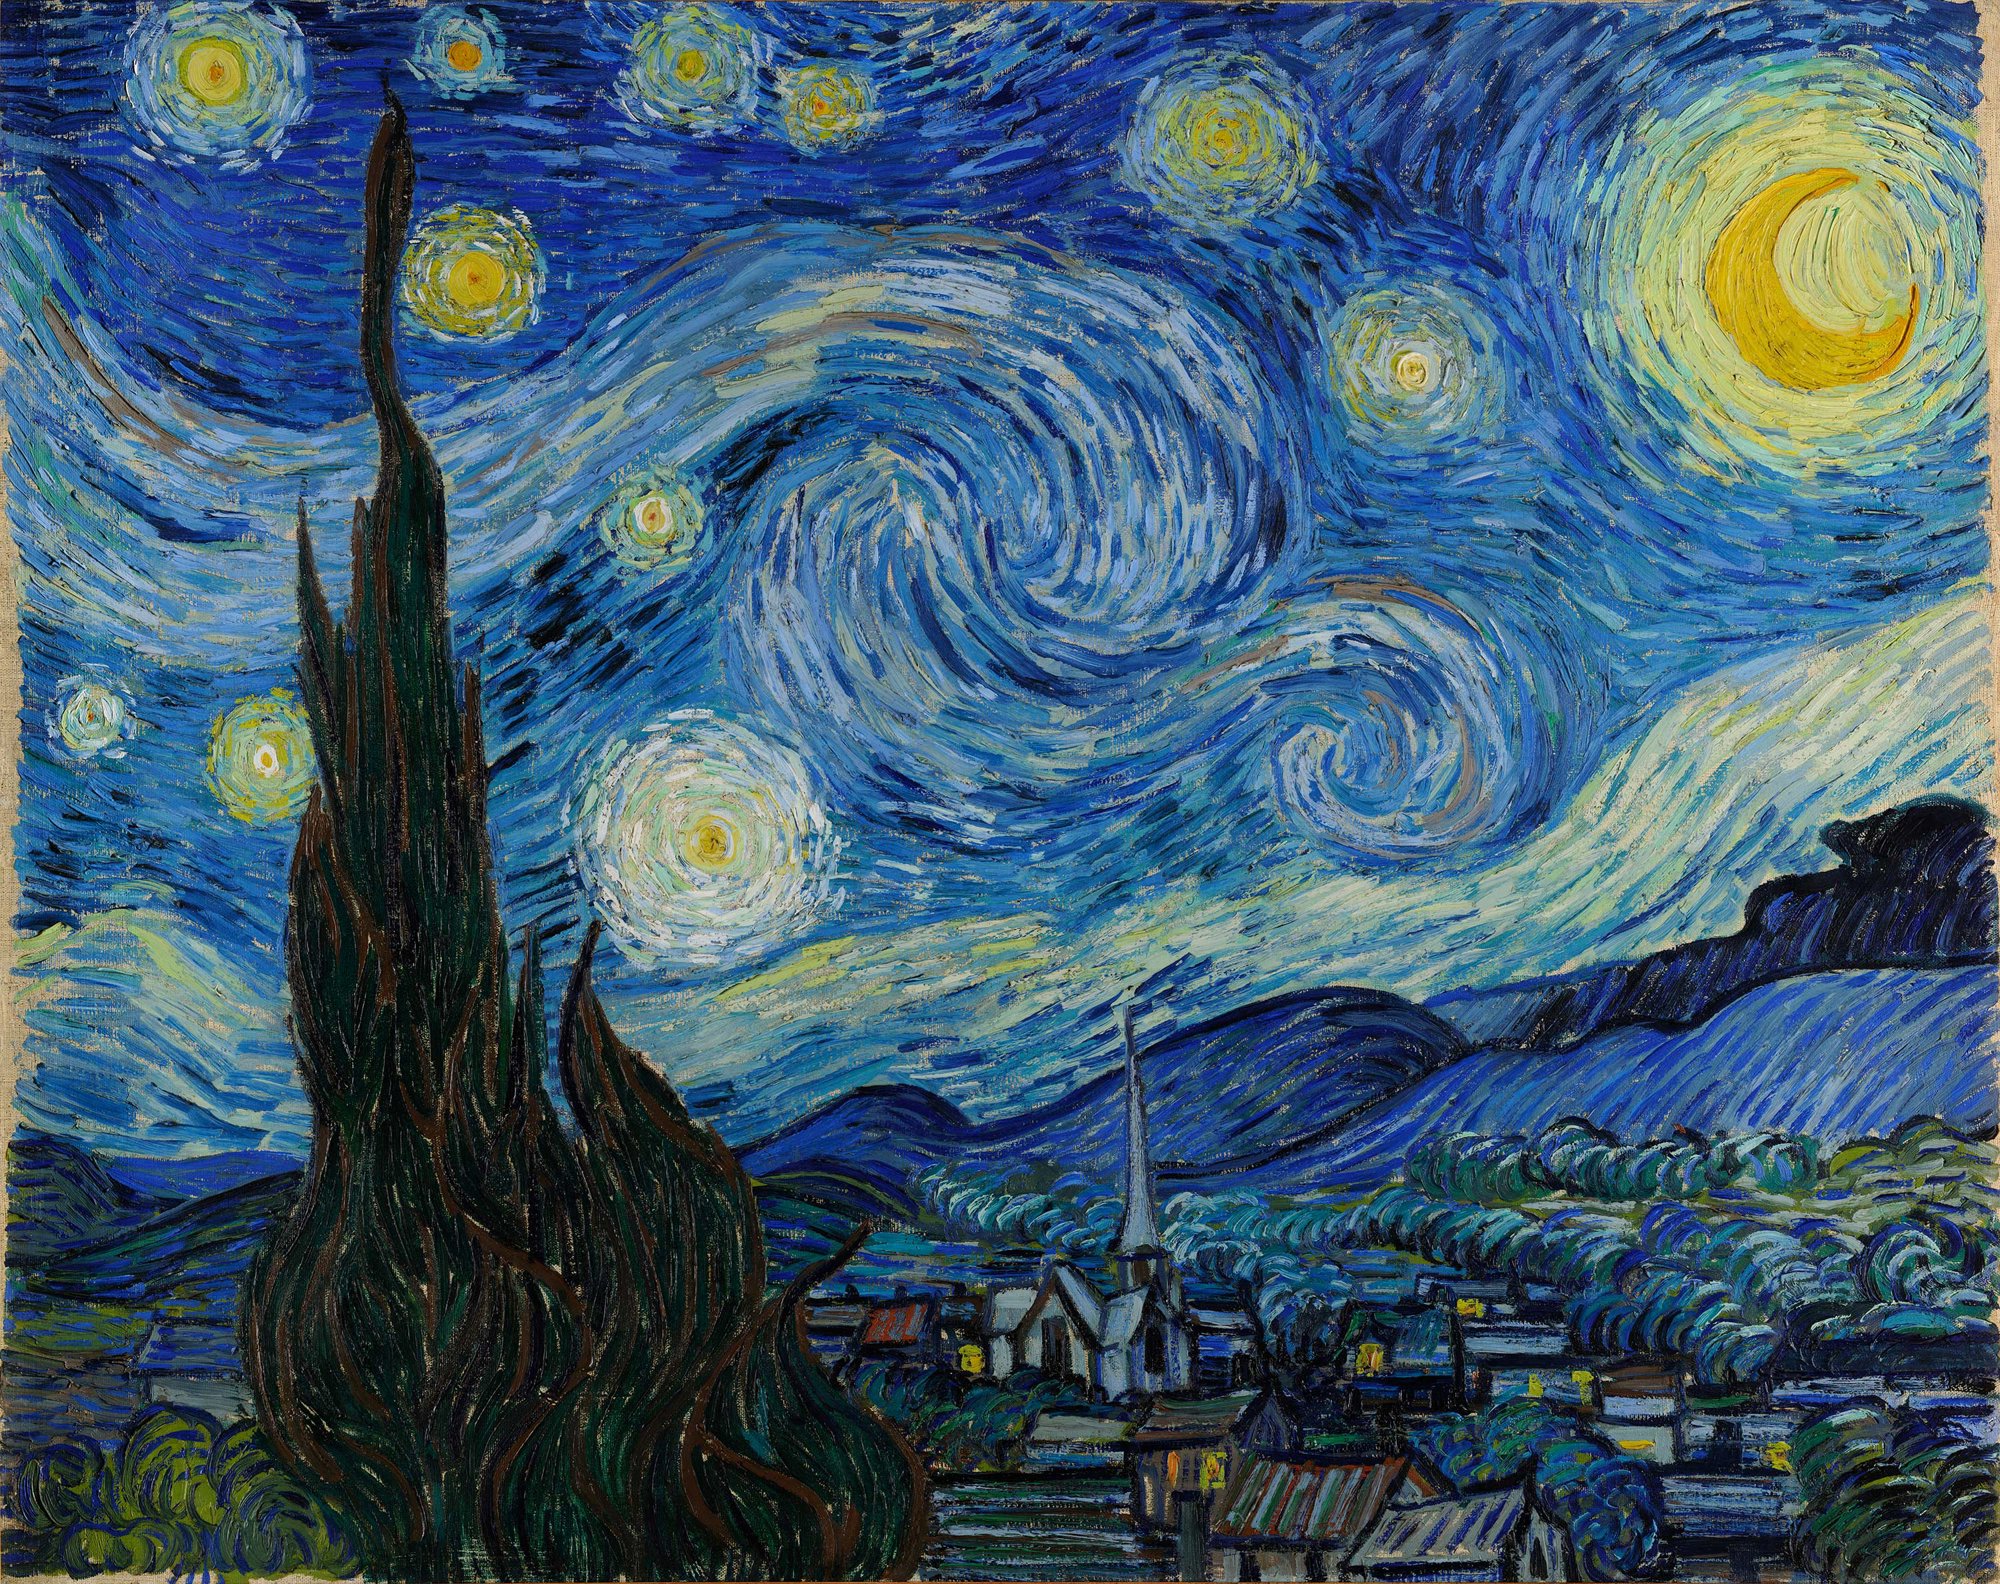 La noche estrellada, Van Gogh, 1889